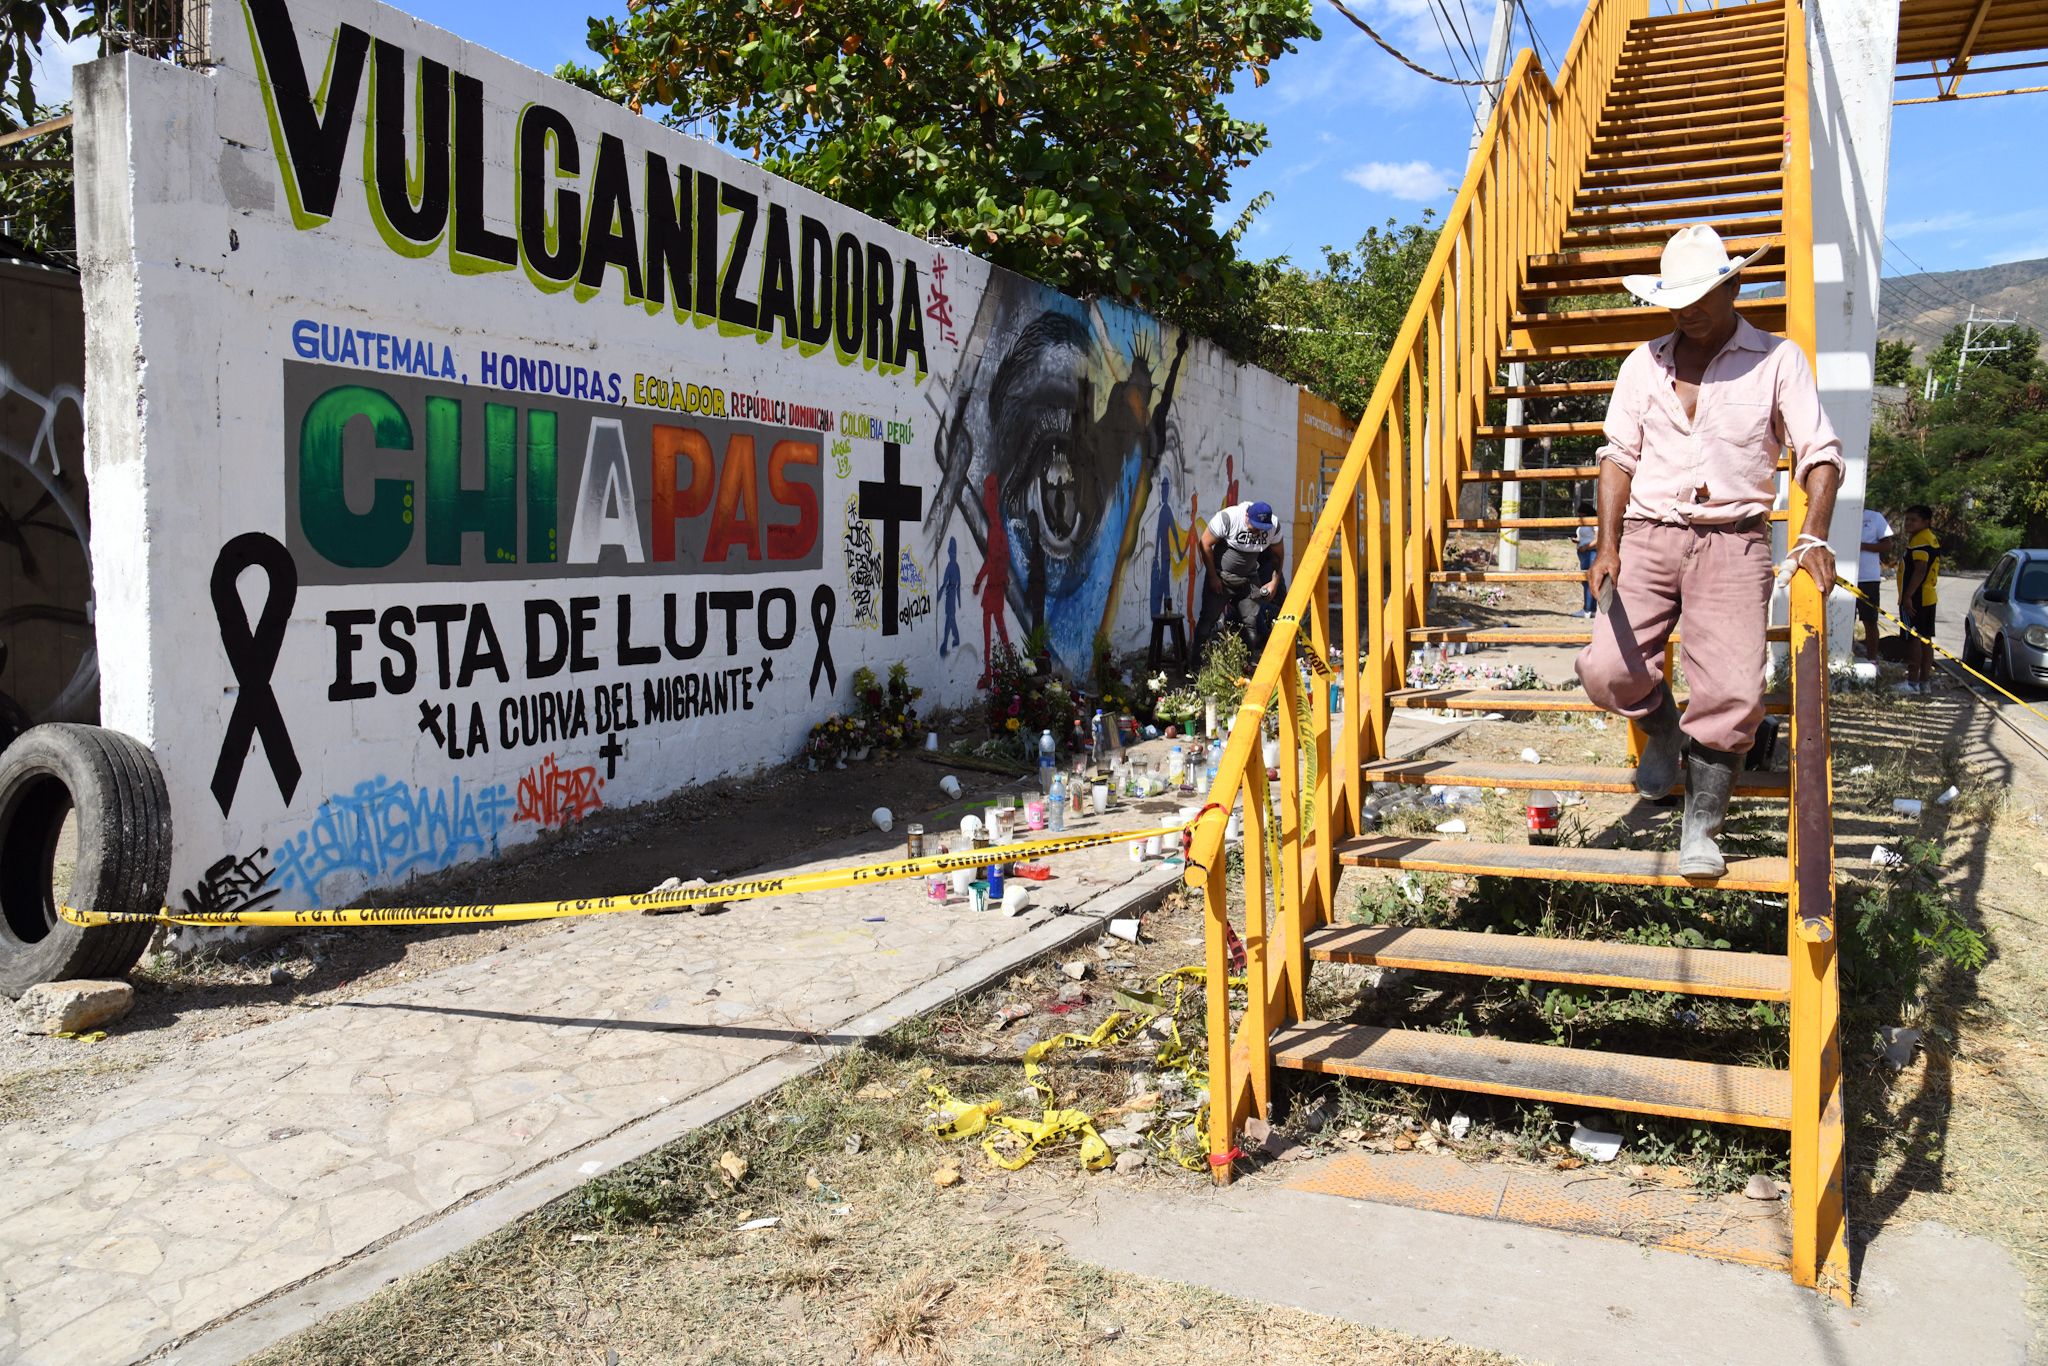 Al menos 56 personas murieron como consecuencia de un accidente de un tráiler en una carretera de Chiapa de Corzo, Chiapas, México, en una de las peores tragedias con migrantes de la historia. (Foto Prensa Libre:) 

